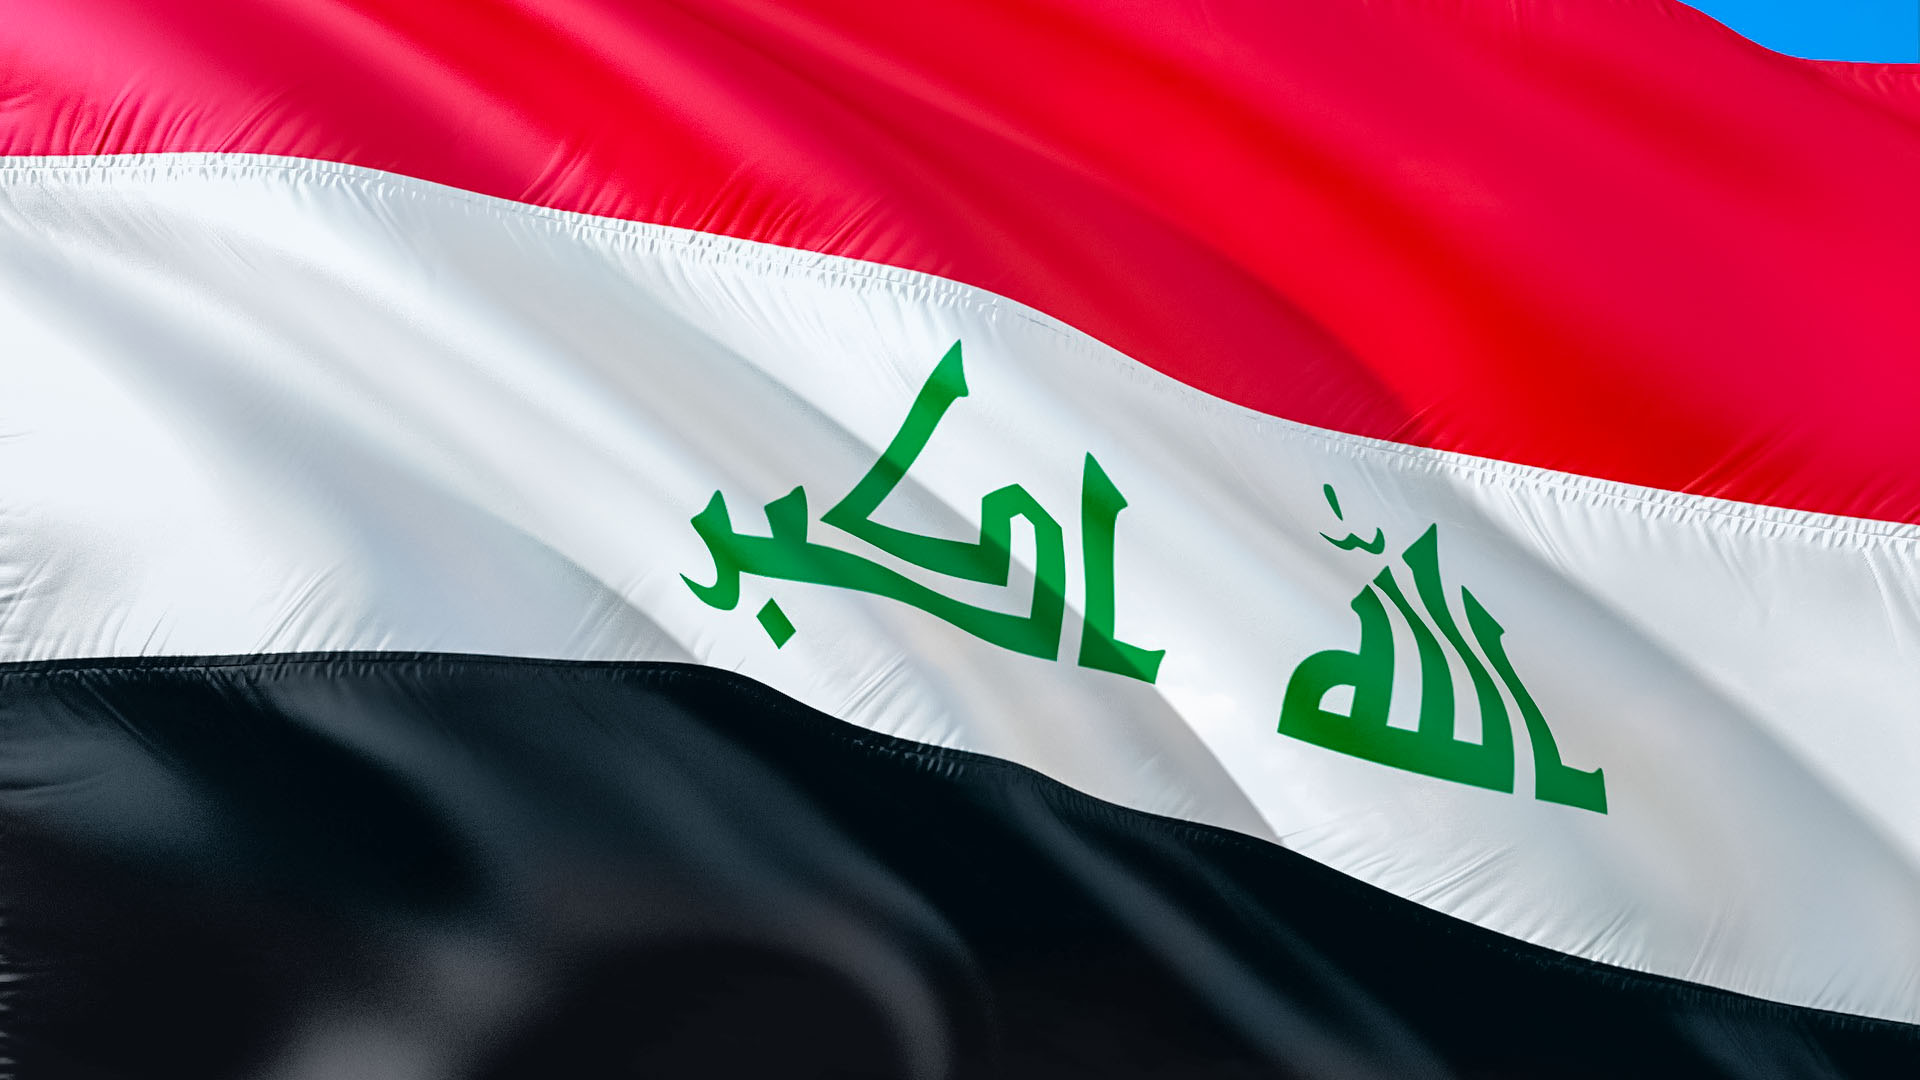 المالية النيابية العراقية تعلن عن إعداد سلم رواتب جديد للموظفين وتغييرات في الضرائب tax